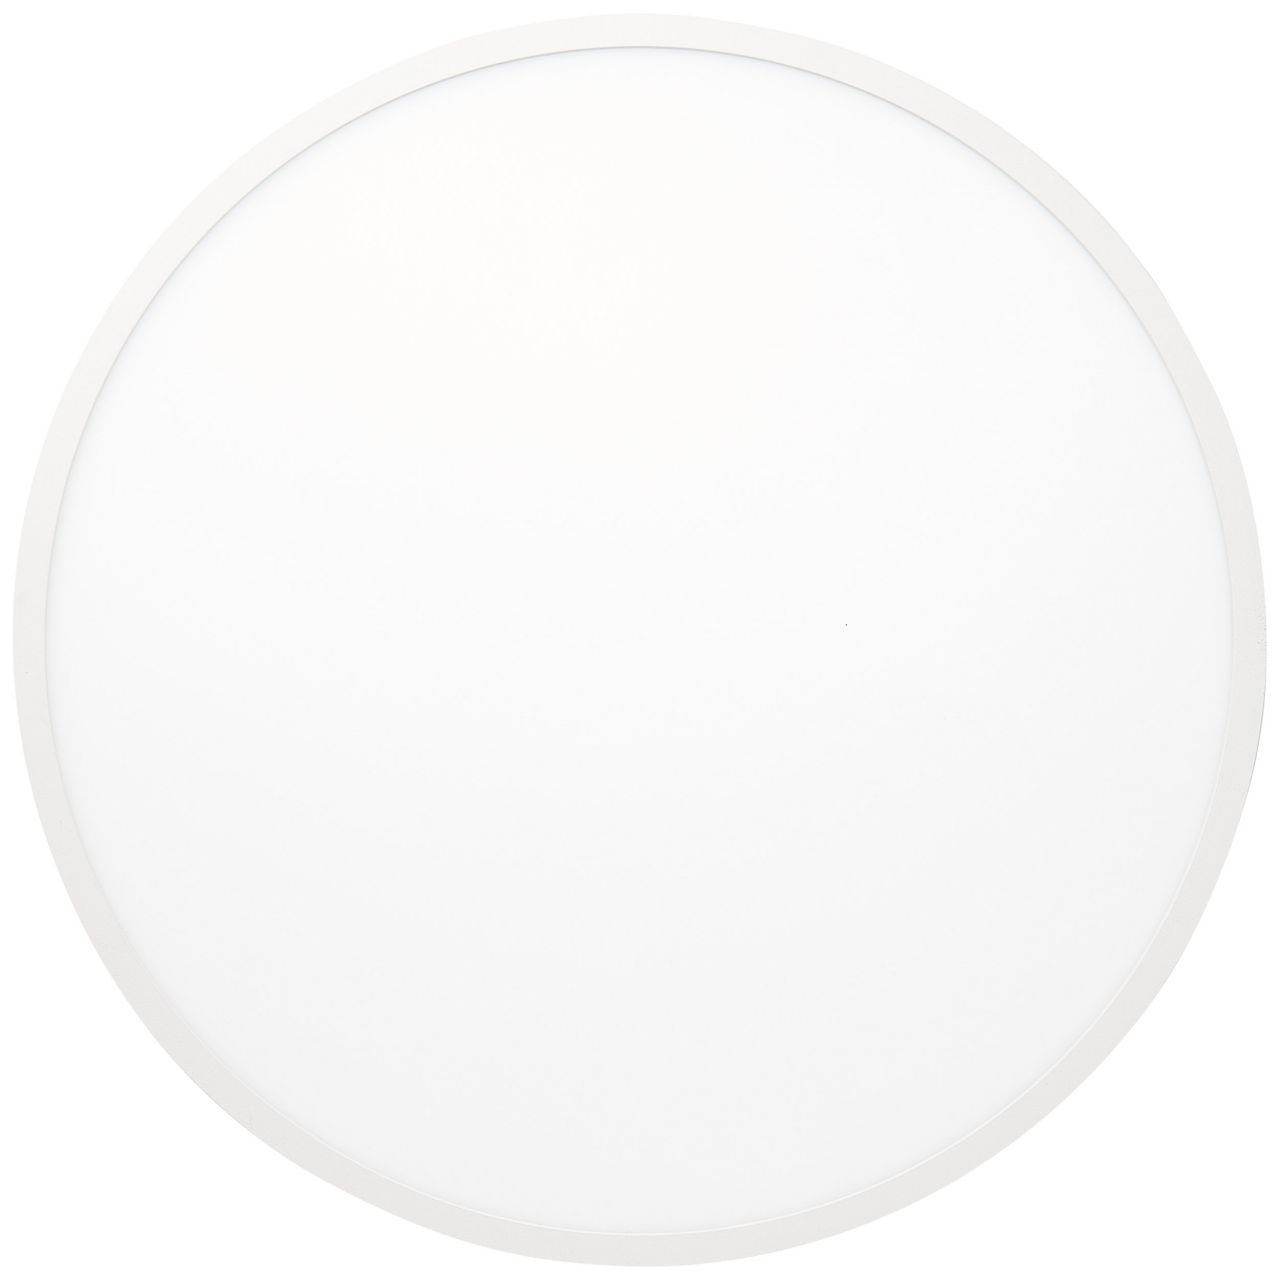 1x Lampe Buffi, Deckenaufbau-Paneel sand/weiß/warmweiß 45cm Deckenleuchte LED 2700K, Brilliant Buffi L 30W